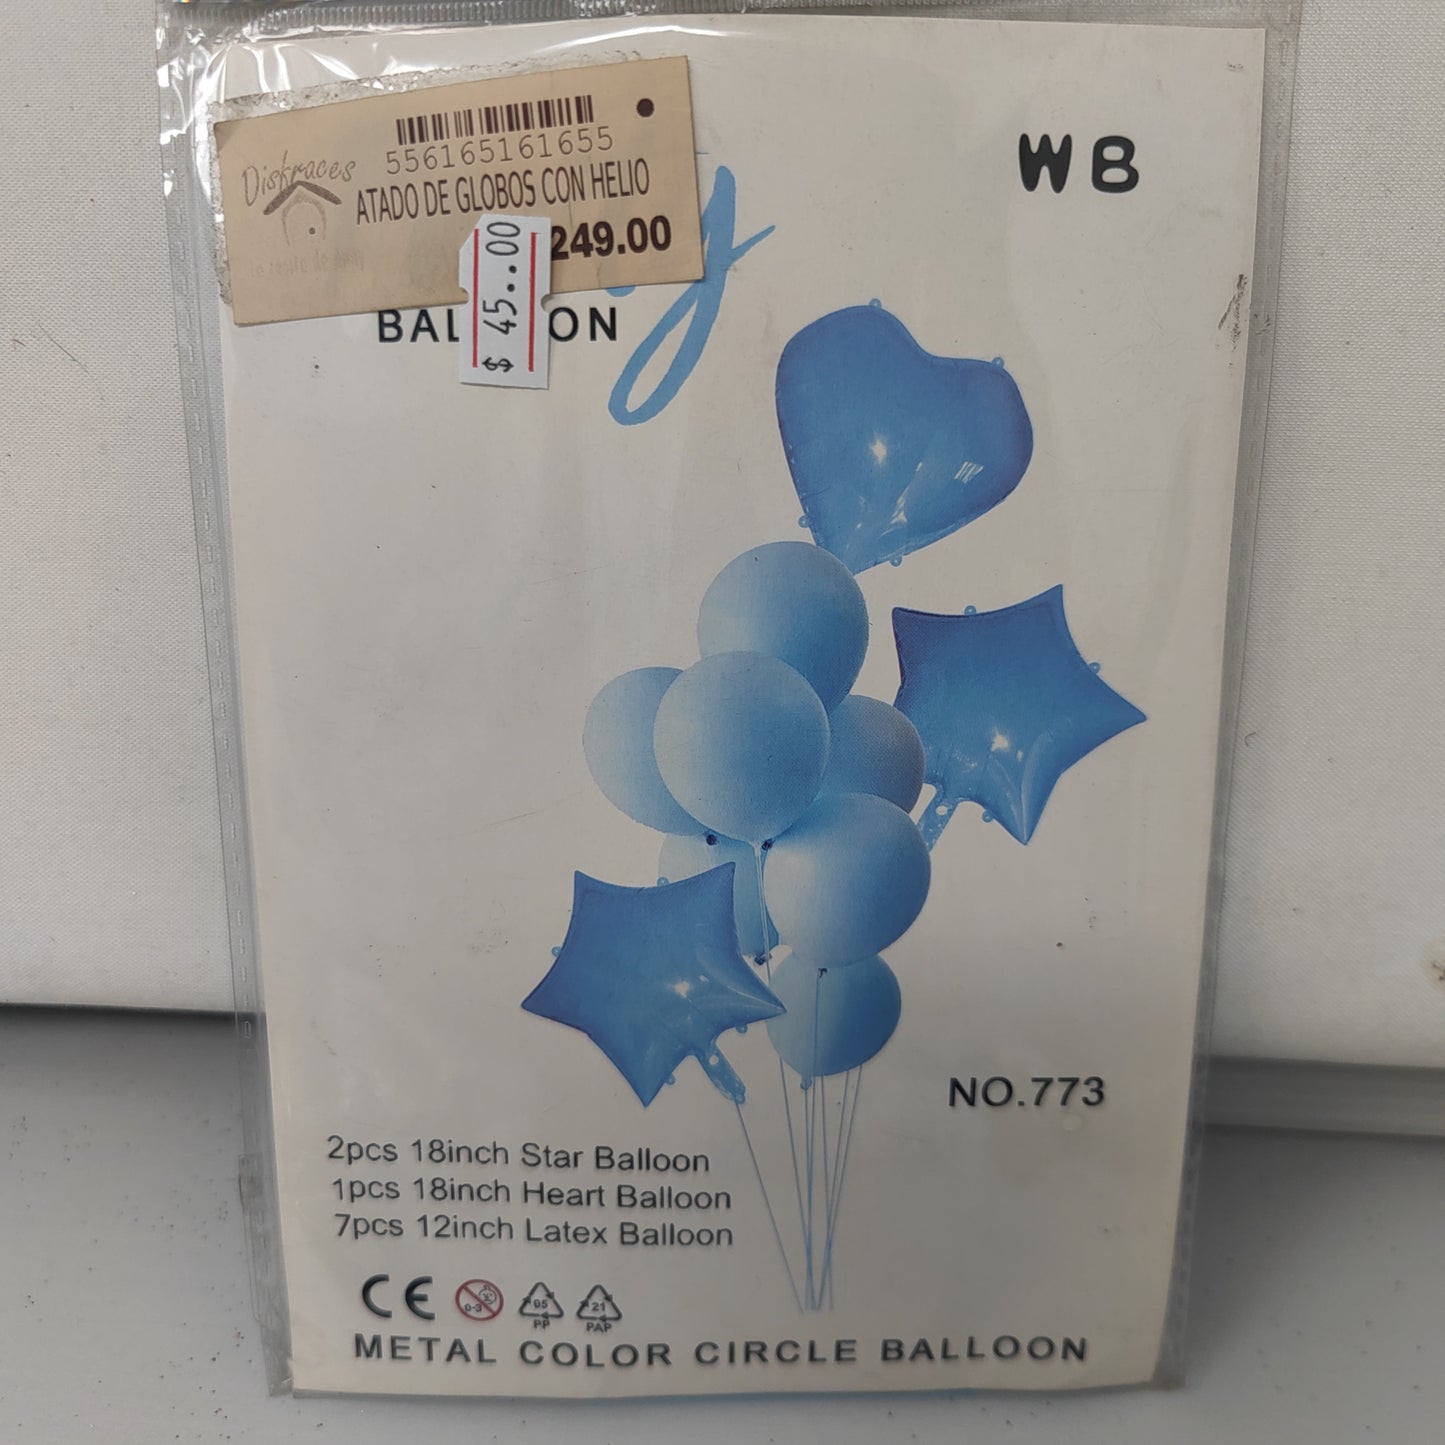 Atado de globos con helio